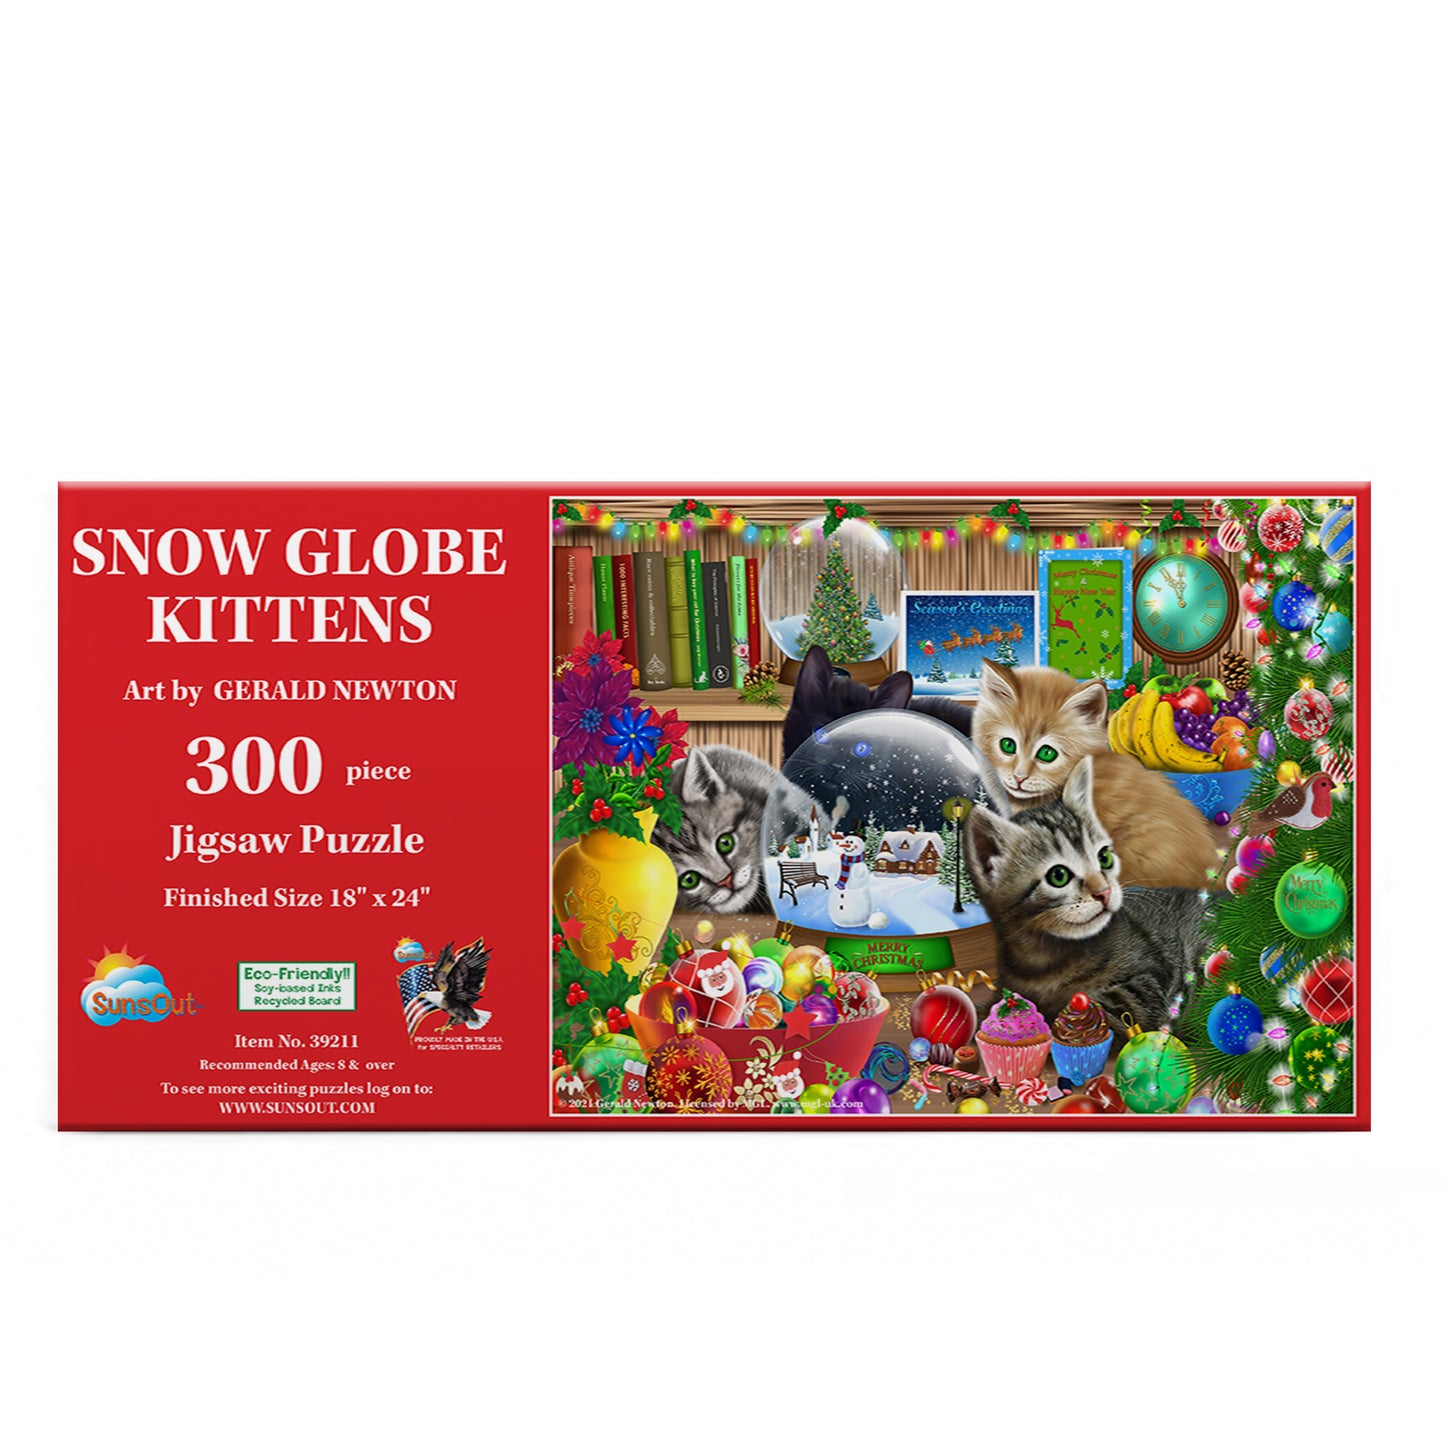 Snow globe Kittens - 300 Piece Jigsaw Puzzle